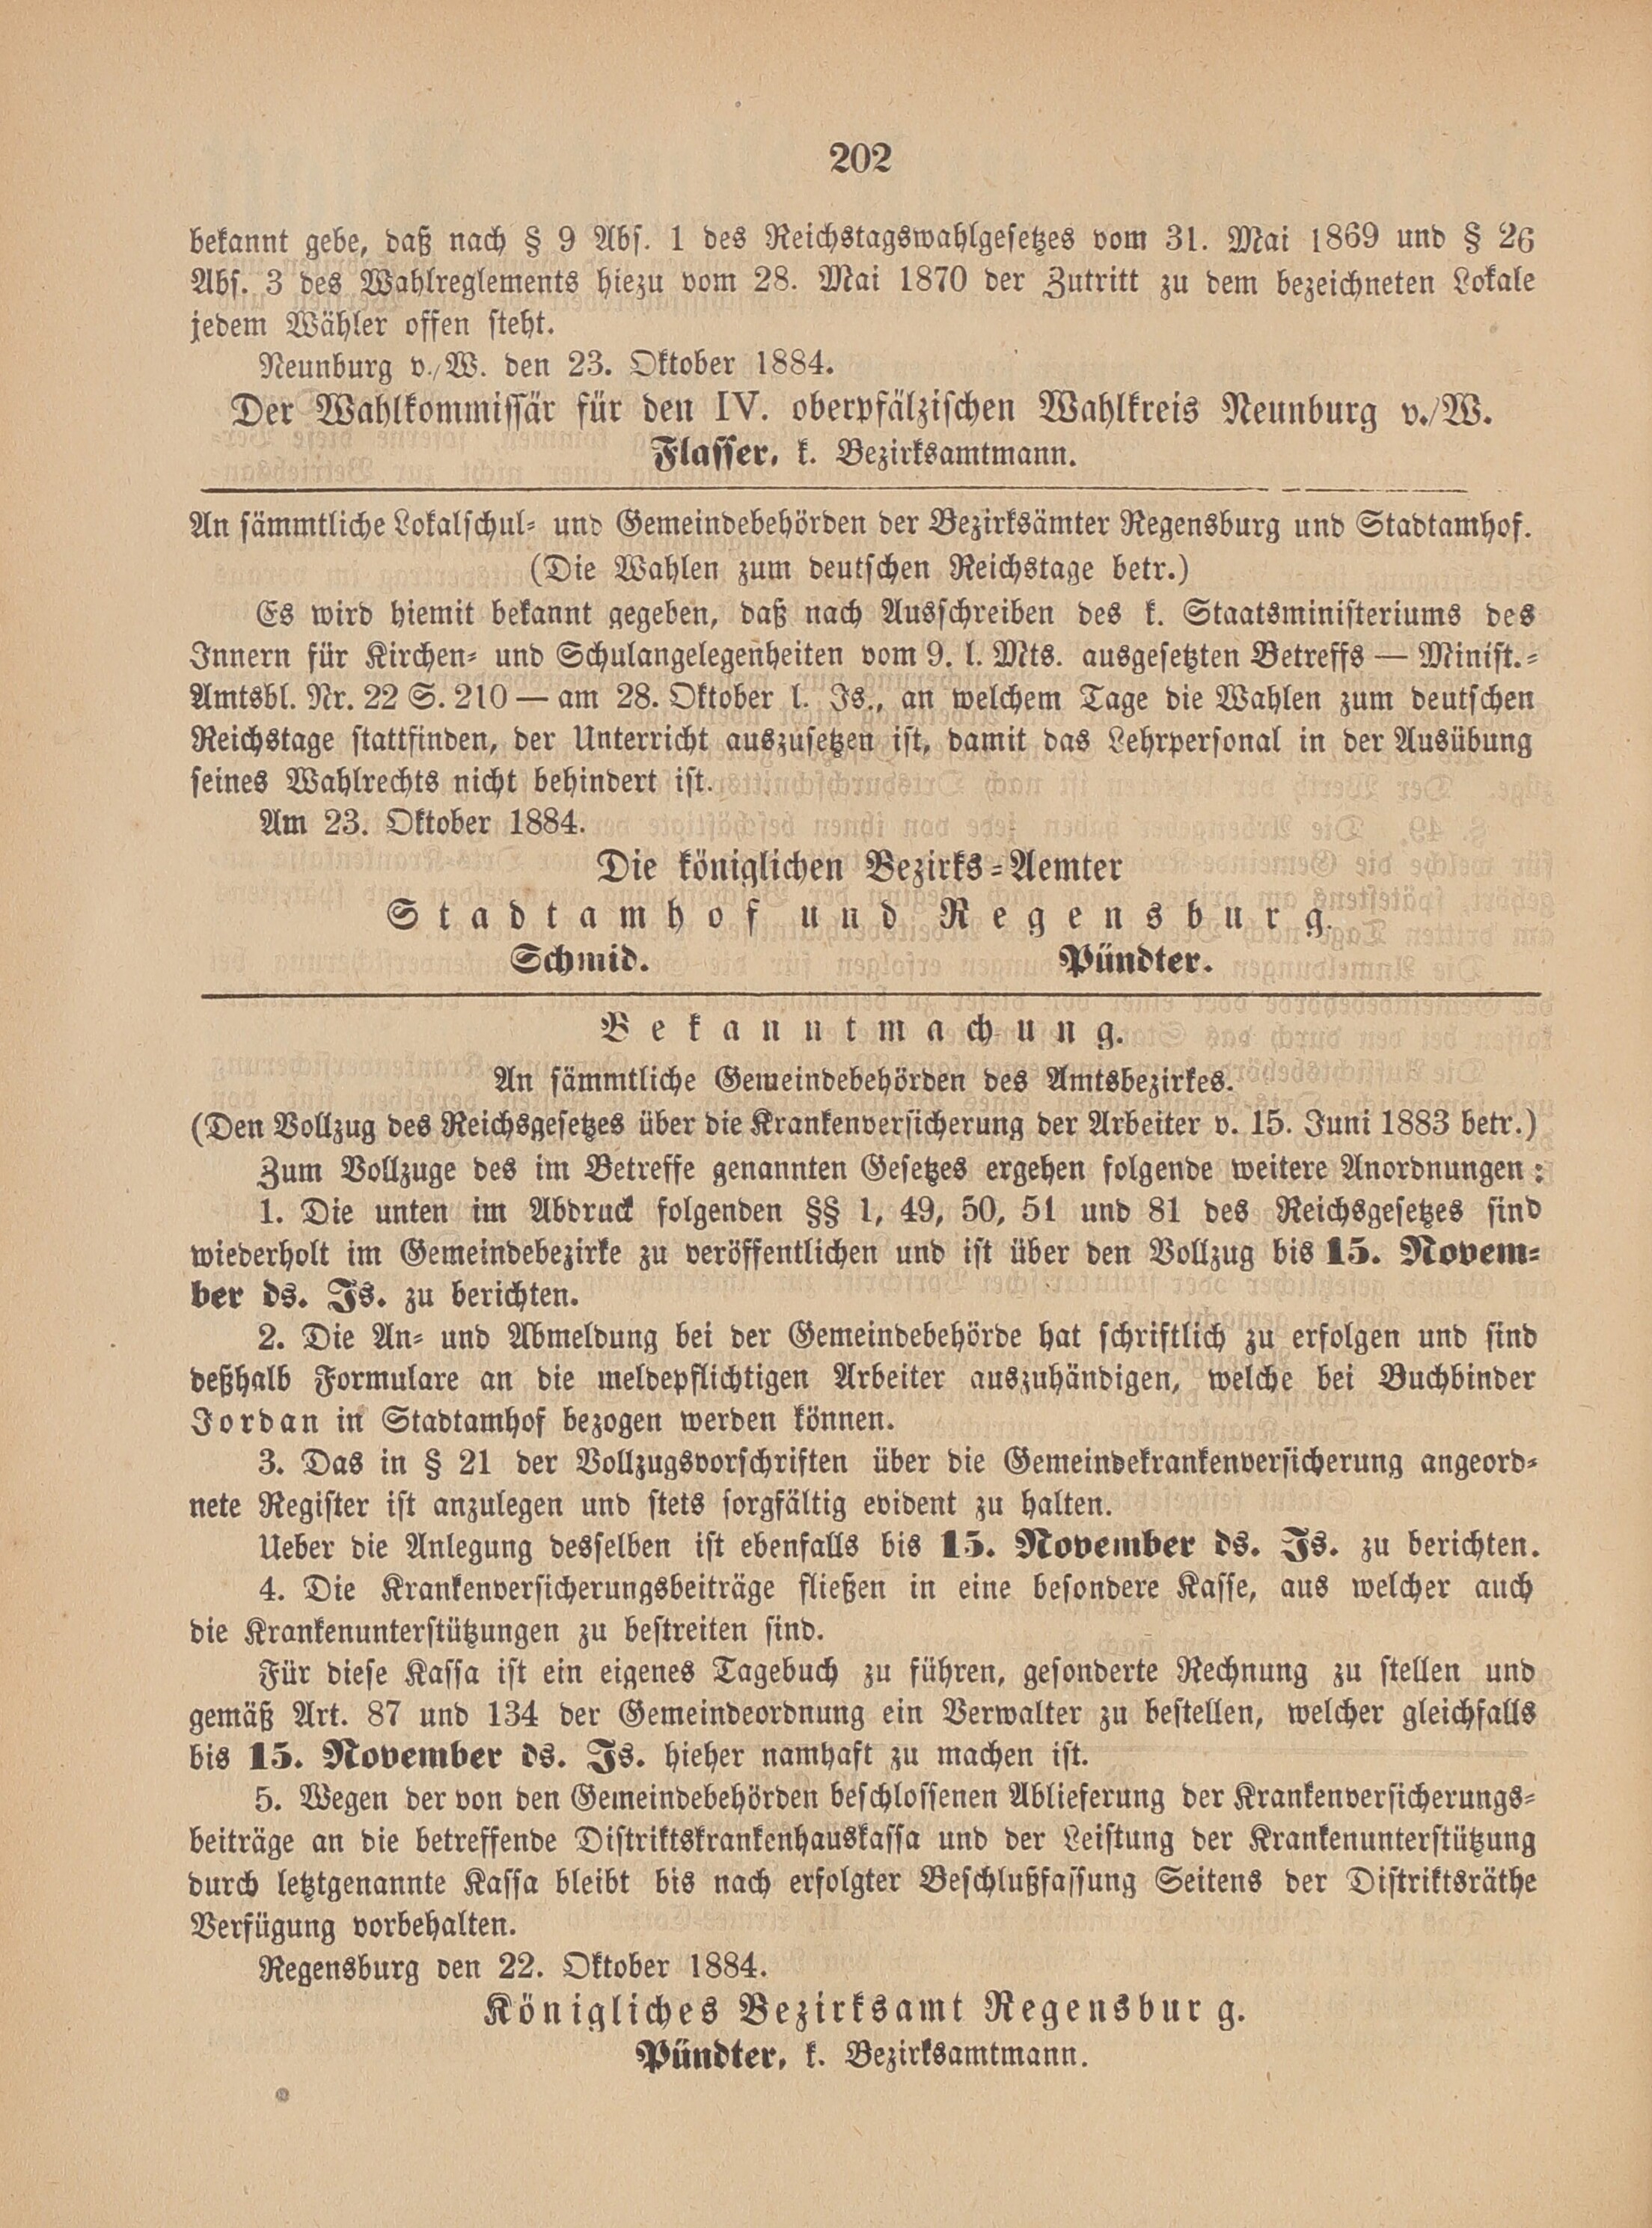 2. amtsblatt-stadtamhof-regensburg-1884-10-26-n43_2070